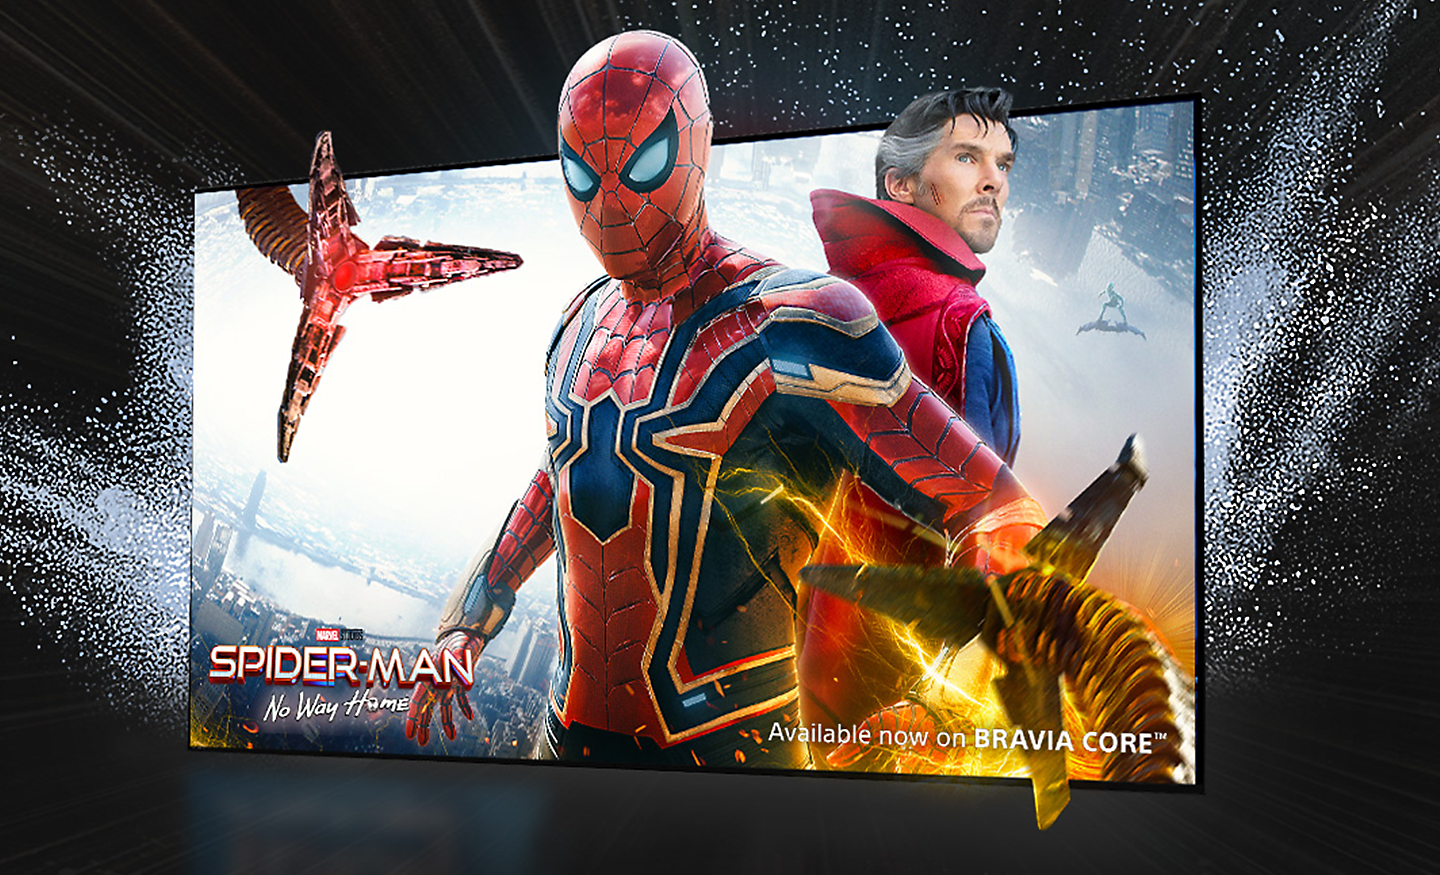 Layar TV memperlihatkan film SPIDER-MAN No Way Home dengan Spider-man keluar dari layar